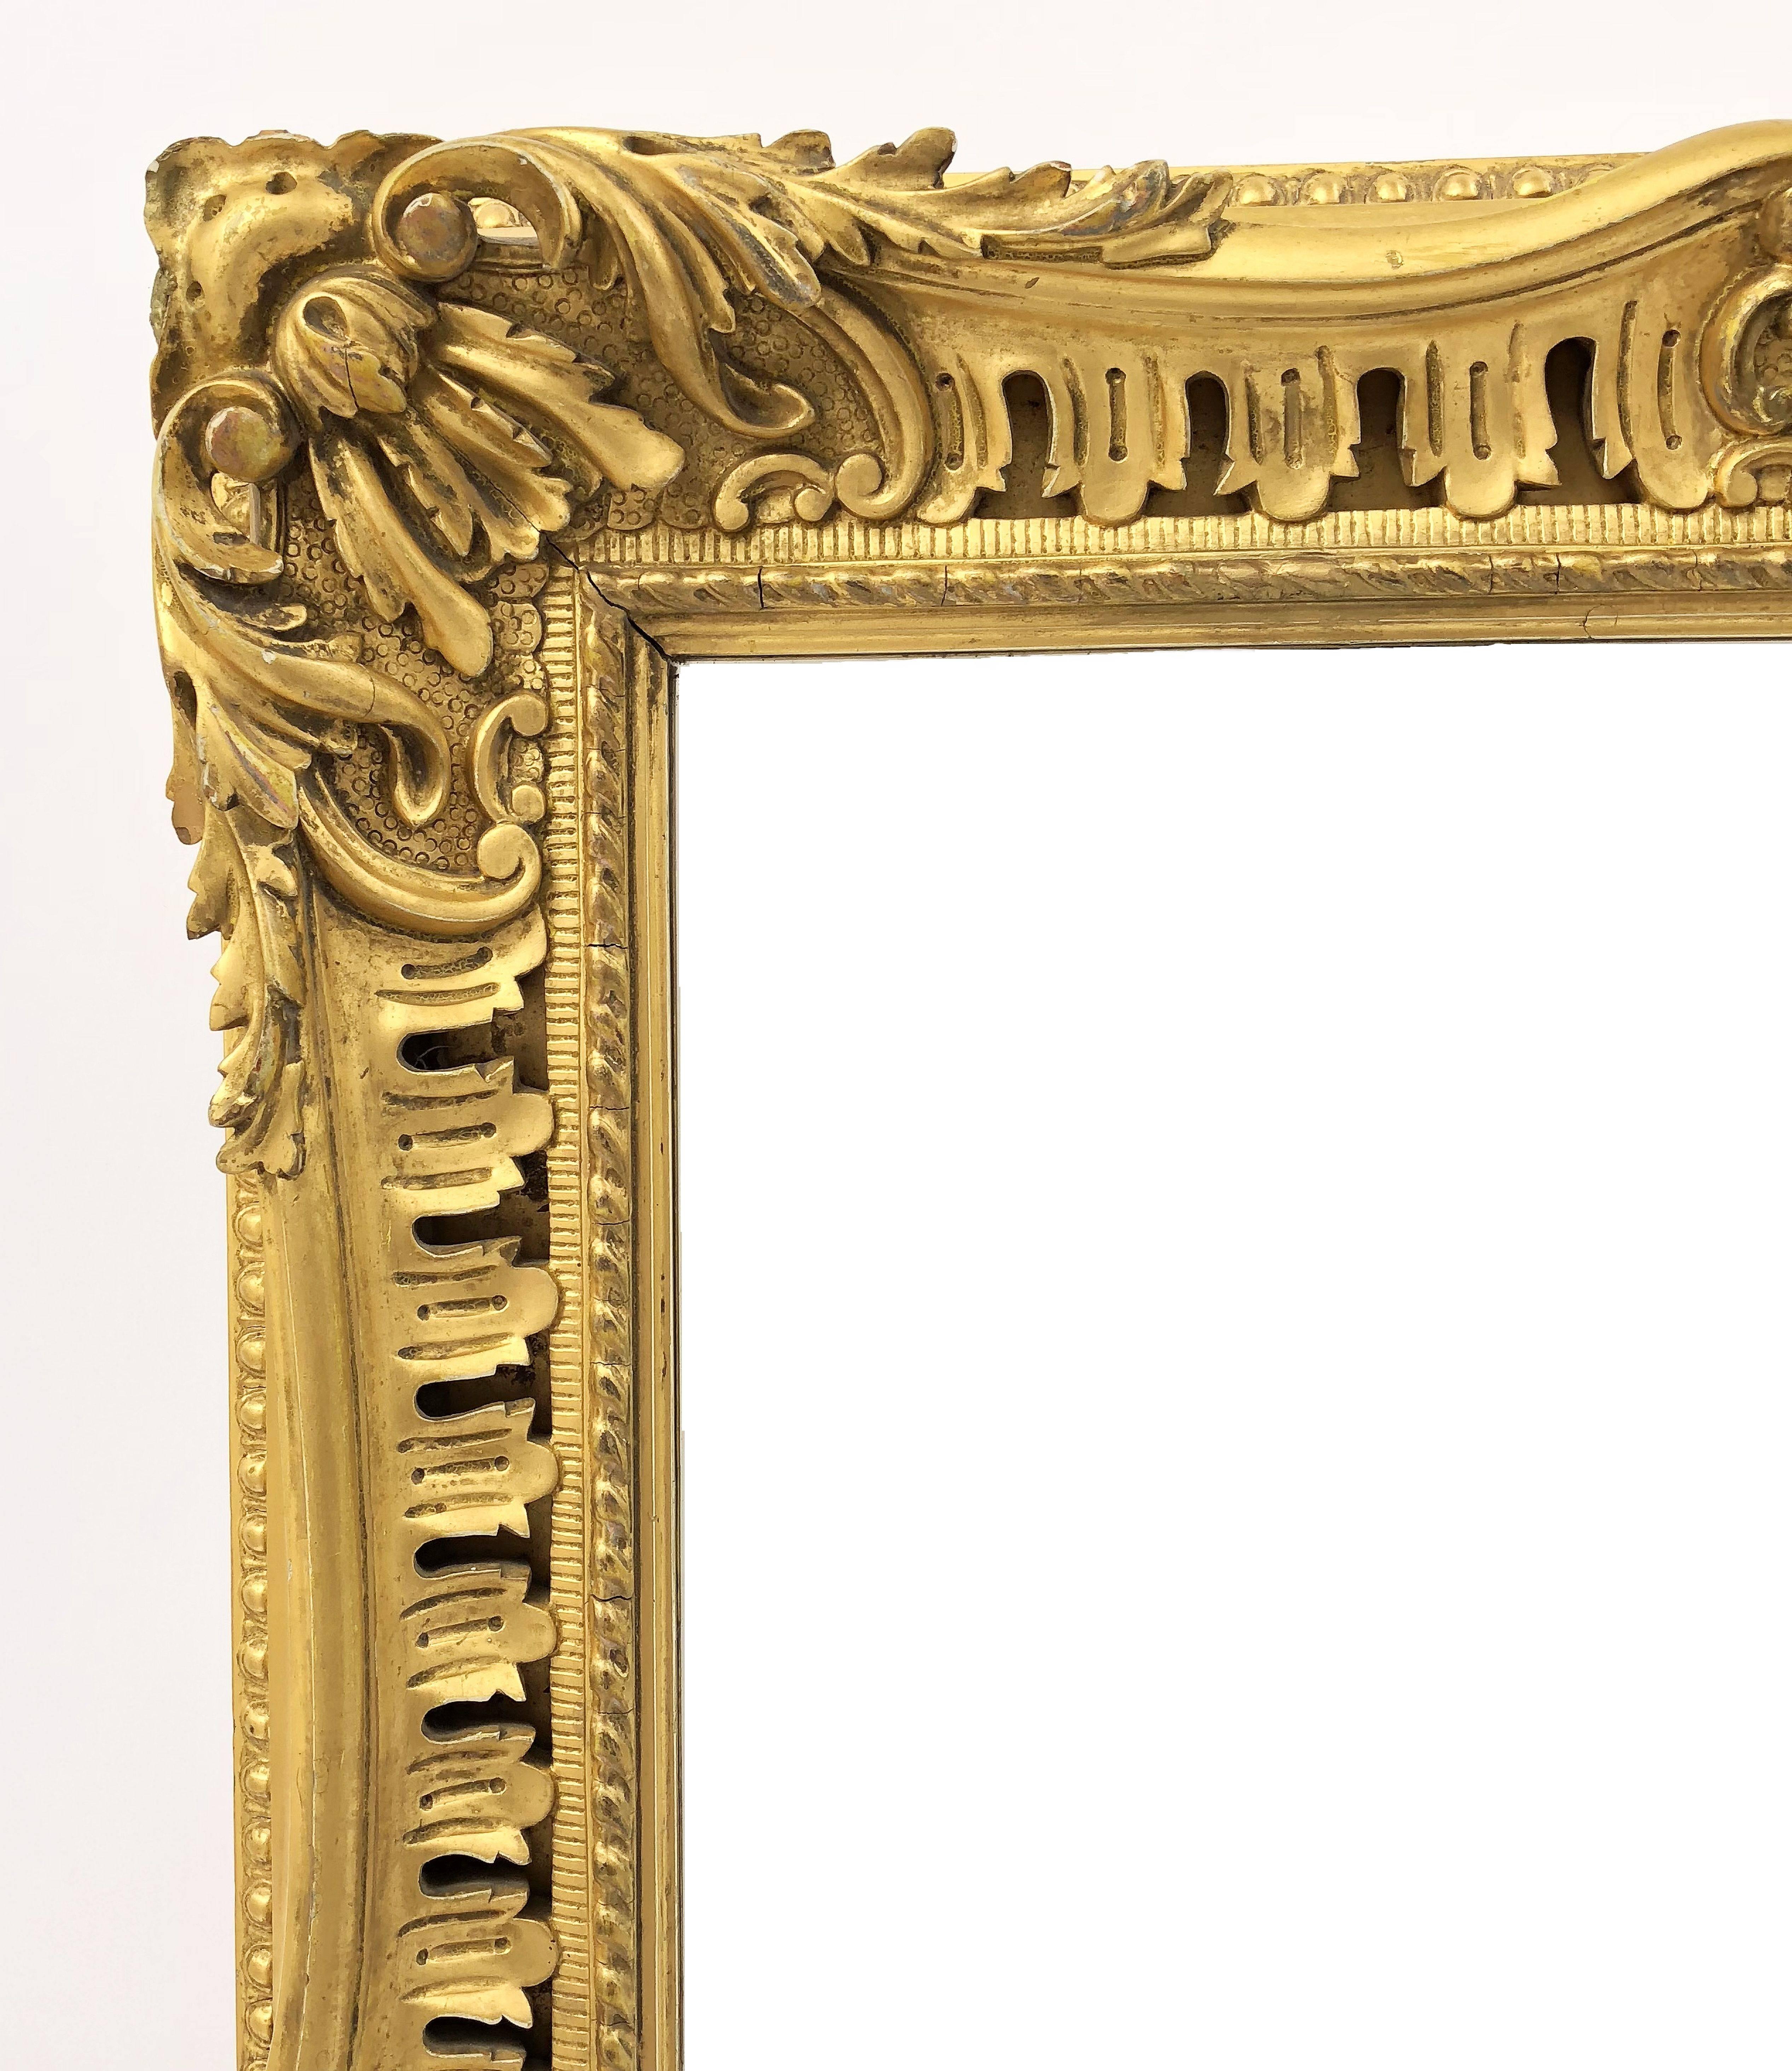 Un beau miroir rectangulaire anglais biseauté avec un cadre sculpté et doré.

Les dimensions sont : Hauteur 35 1/4 pouces x Largeur 27 pouces x Profondeur 3 pouces.
 